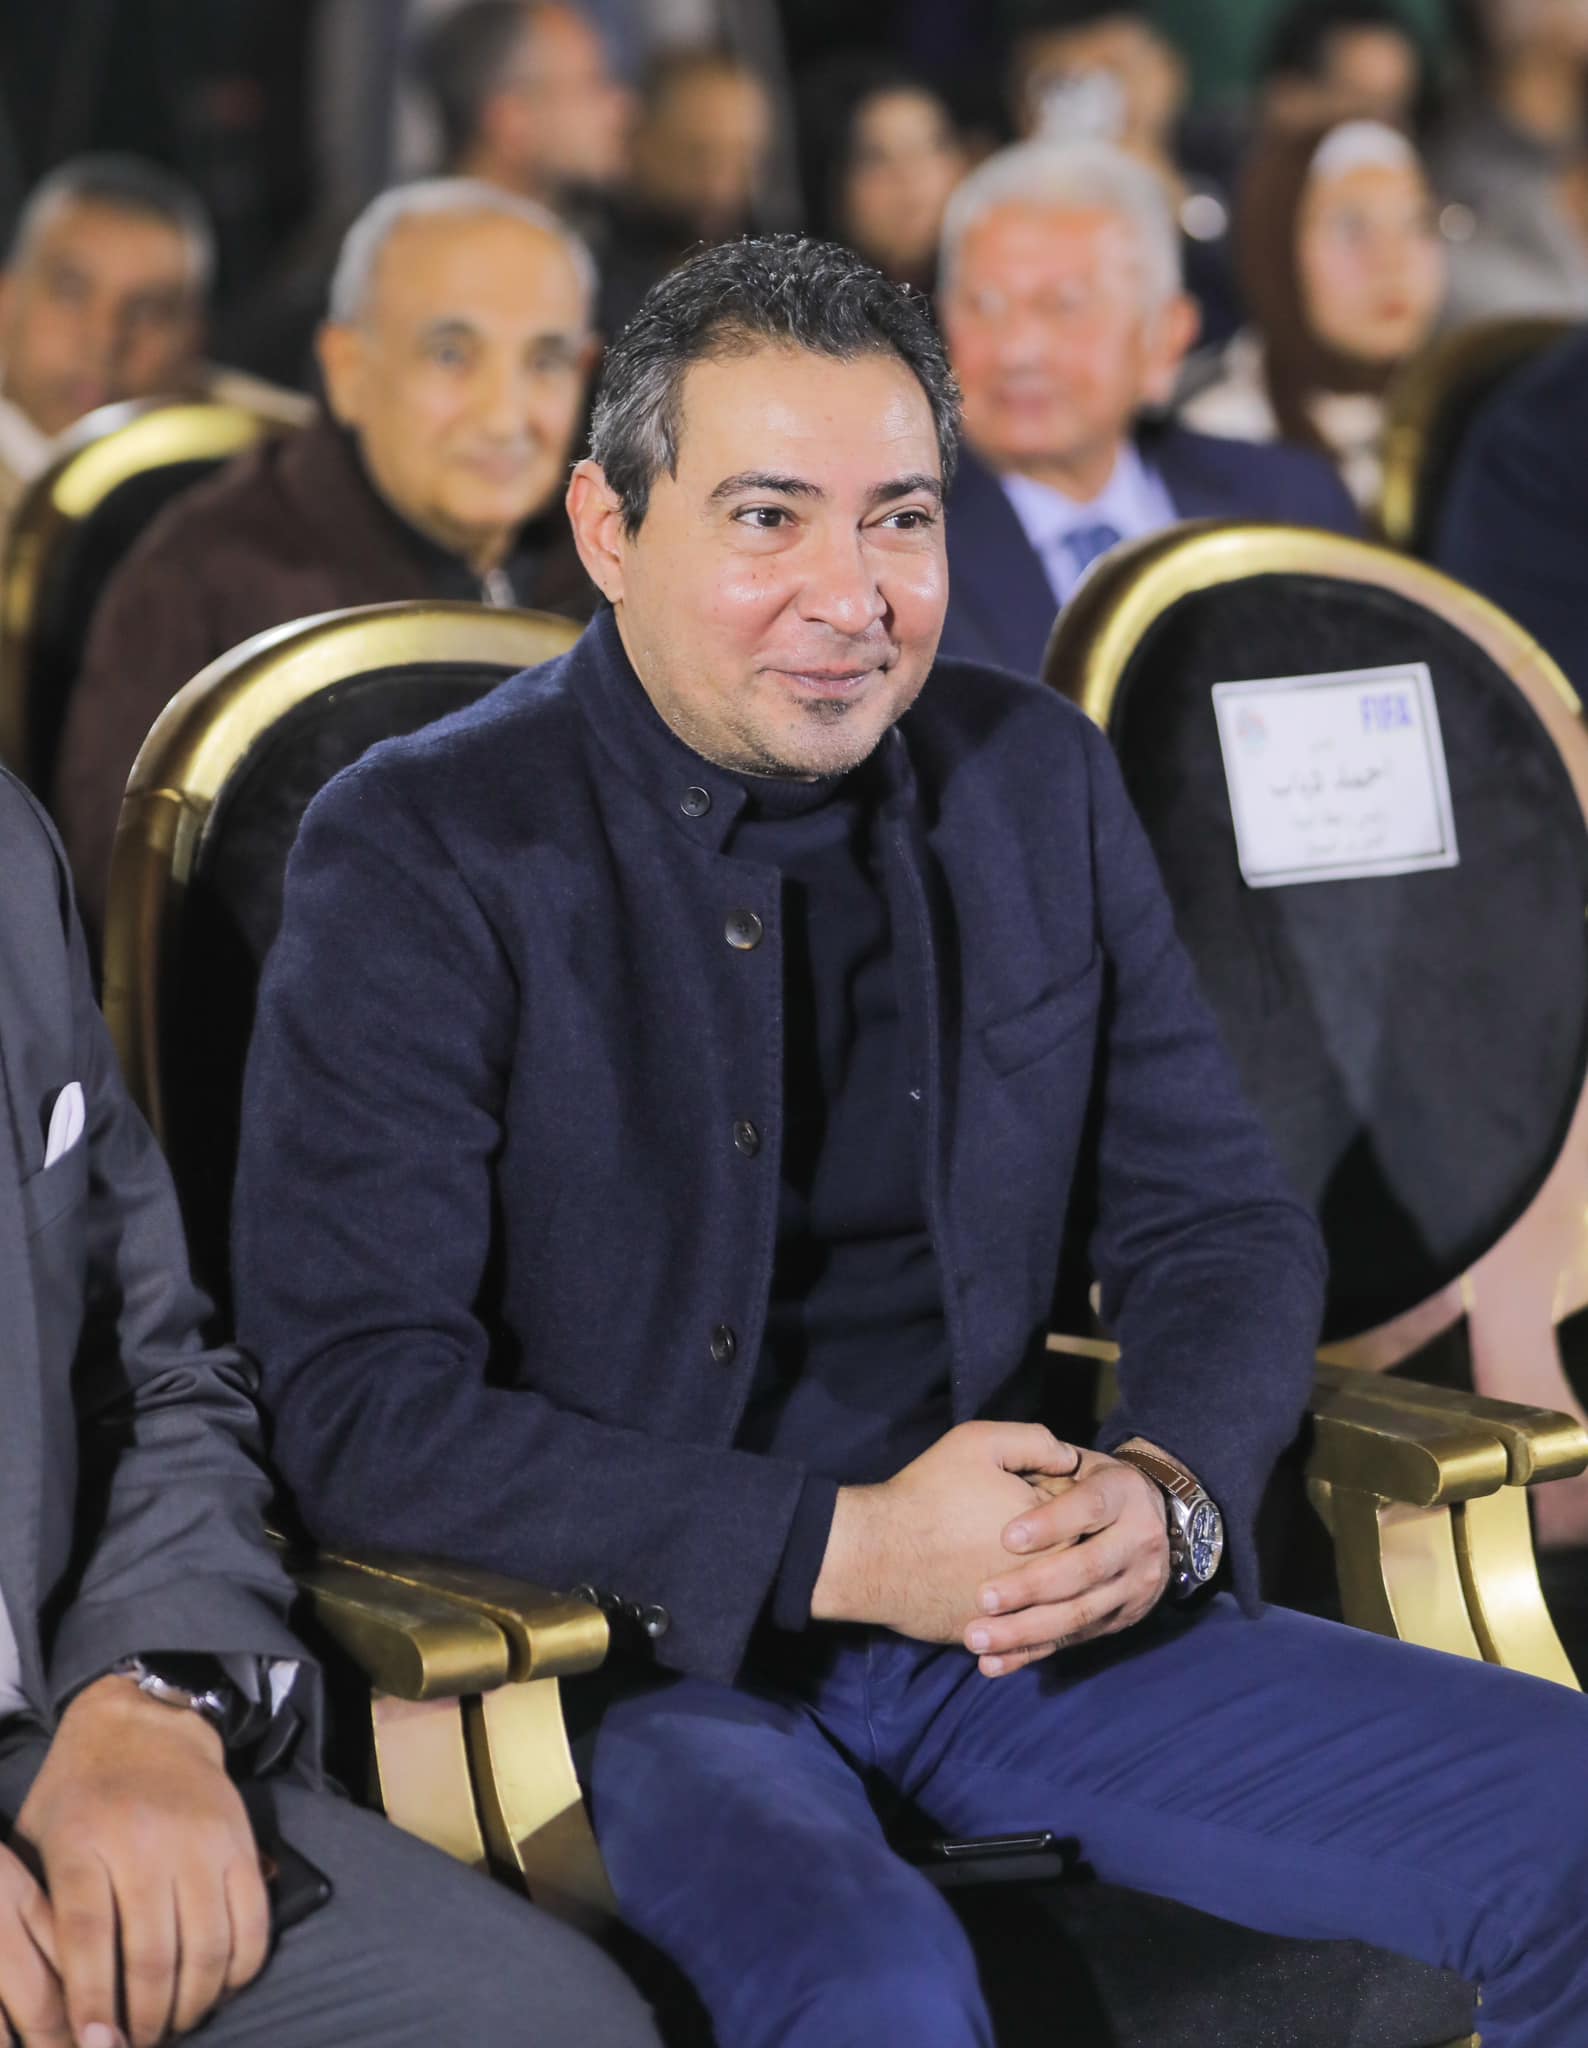 بركات على رأس الحاضرين لتقديم حسام حسن مدرب لمنتخب مصر 2